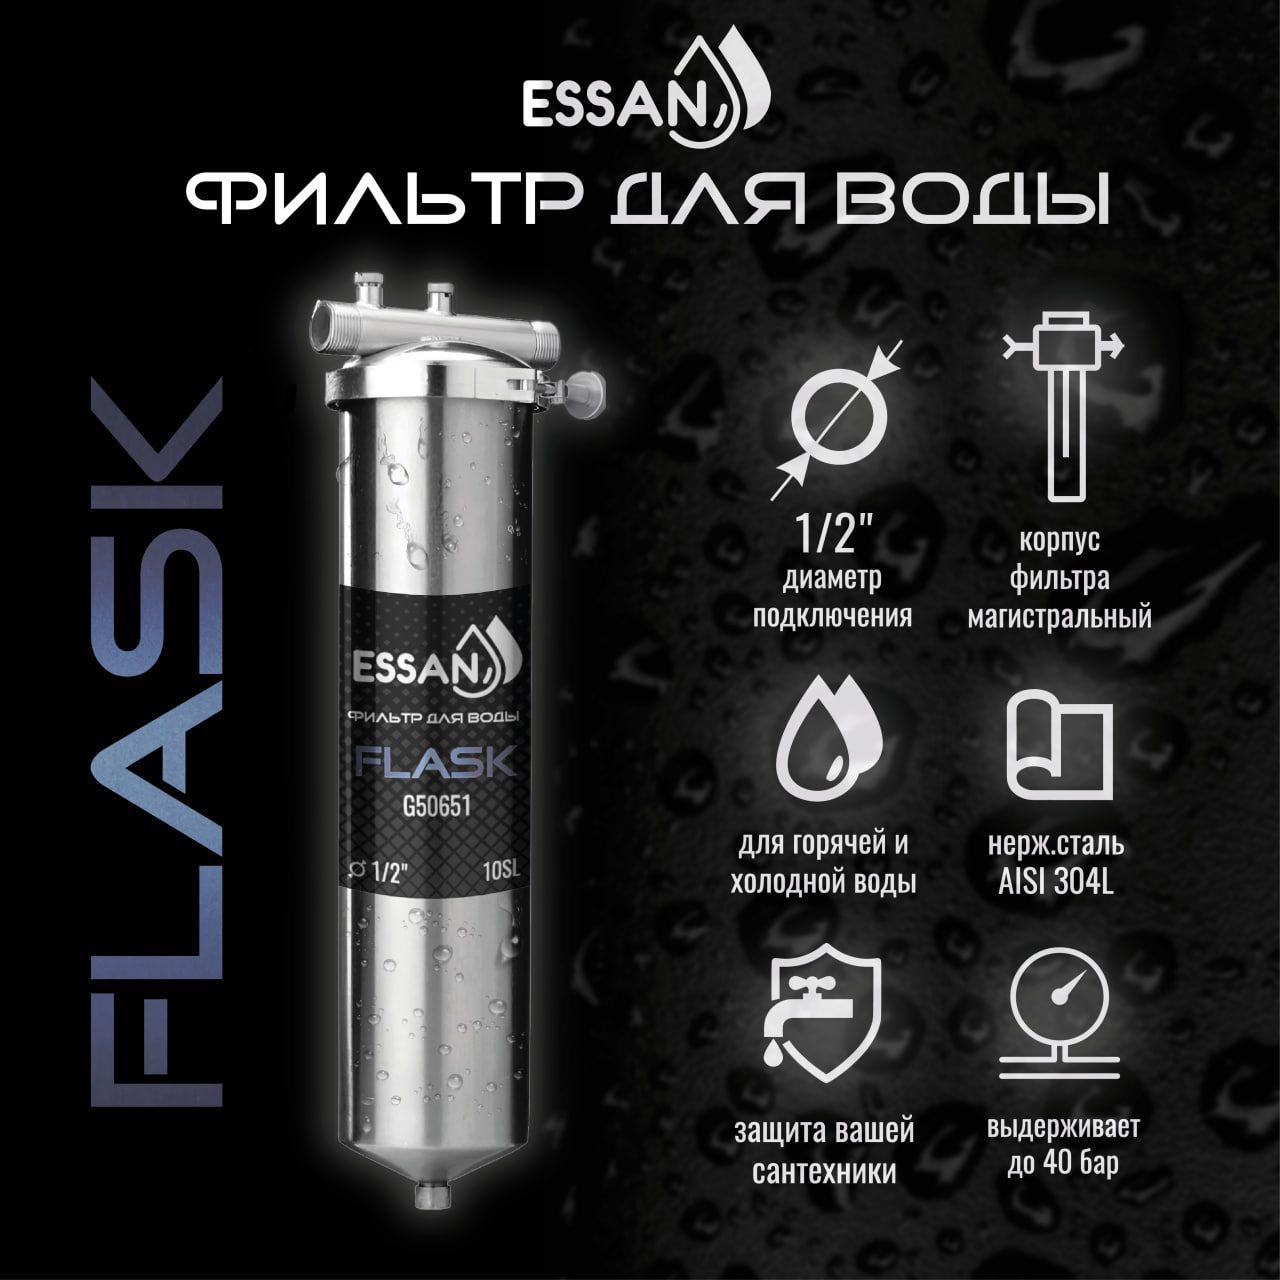 Фильтр колба проточная для магистрального водоснабжения ESSAN FLASK 10SL 1/2 H Slim Line фильтр колба проточная для магистрального водоснабжения essan flask 10sl 1 2 h slim line